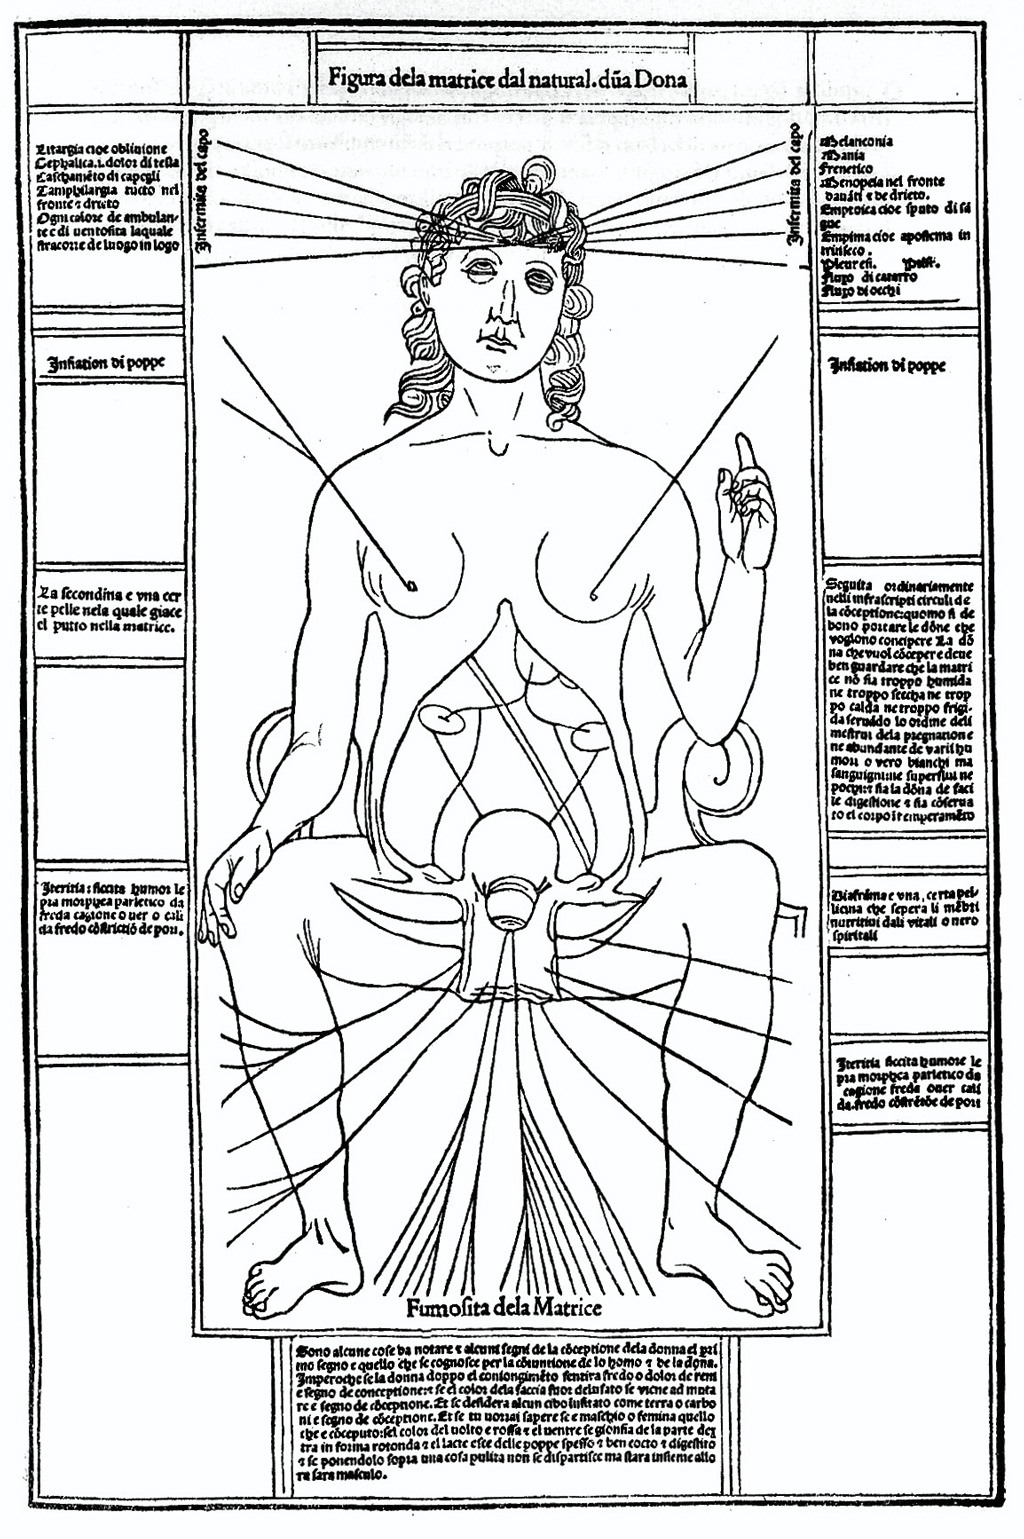 رسم لـ (ليوناردو دافنشي) لتشريح جسم الأنثى، وخاصة الأعضاء التناسلية، يعود هذا الرسم إلى أواخر القرن الـ 15.